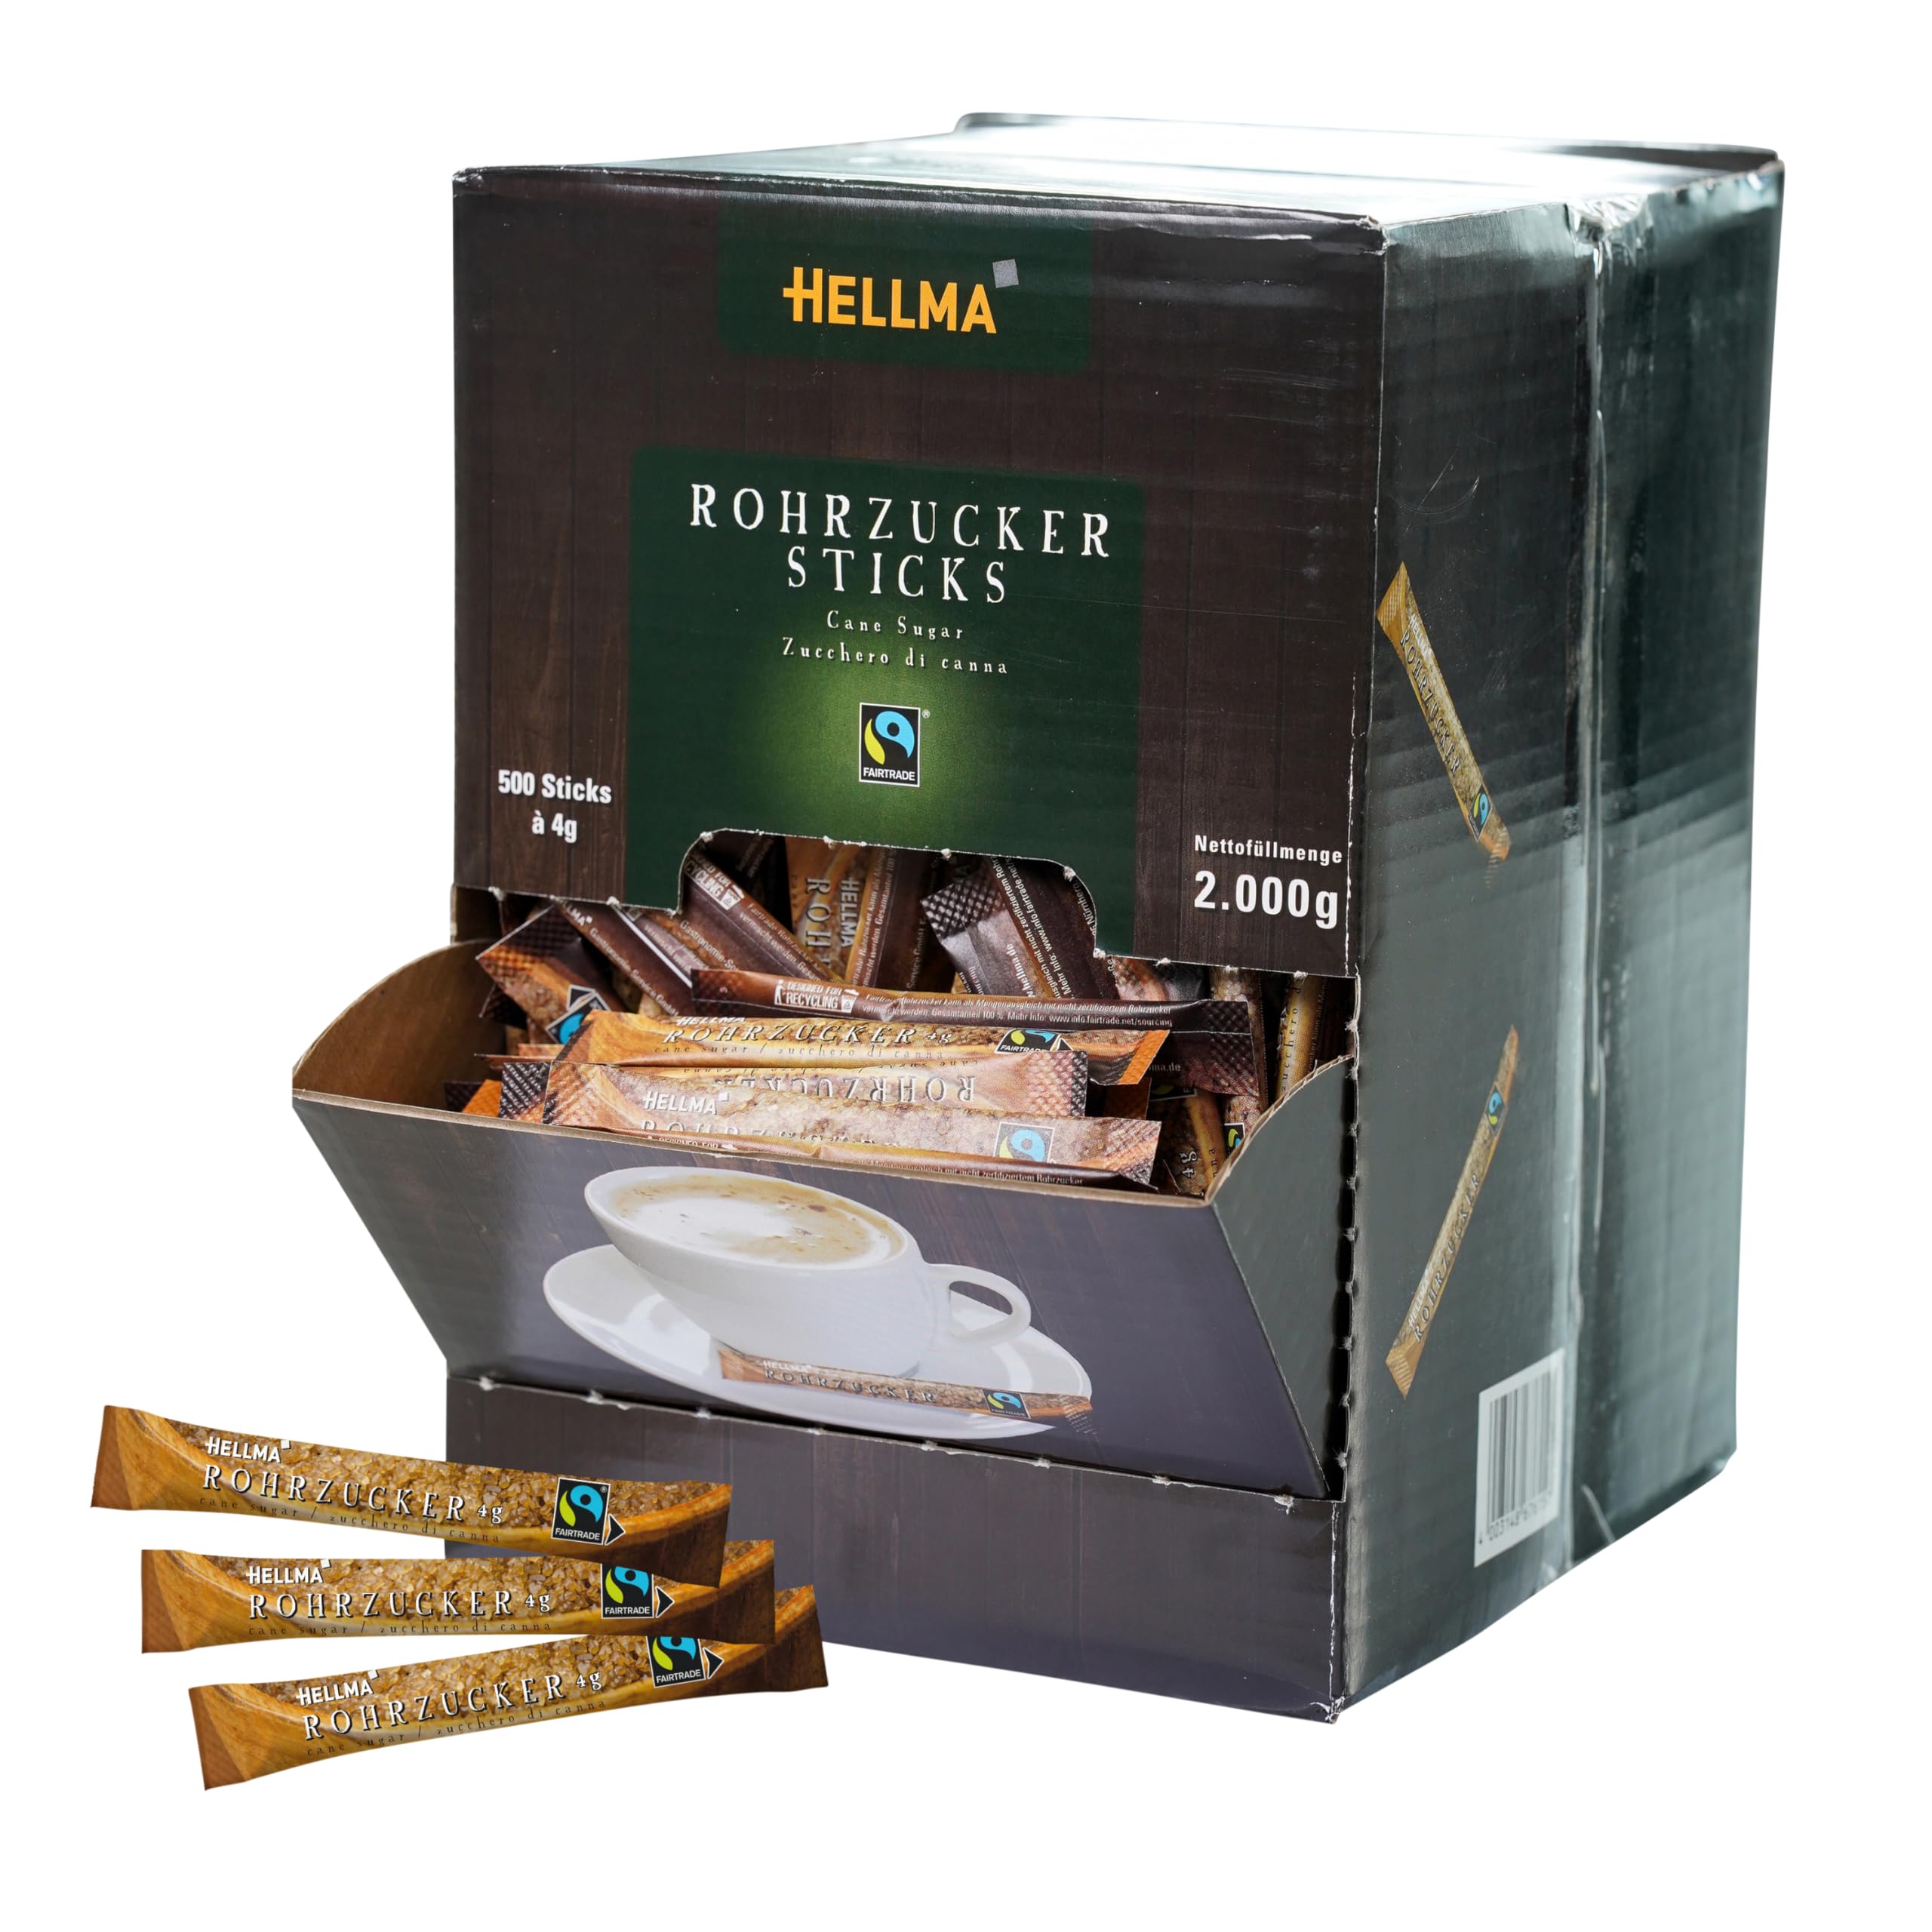 Hellma Fairtrade brauner Rohrzucker-Sticks 500 Stk. je 4 g - 2 kg Vorrats-Box - Zuckertütchen einzeln, für Kaffee, Tee